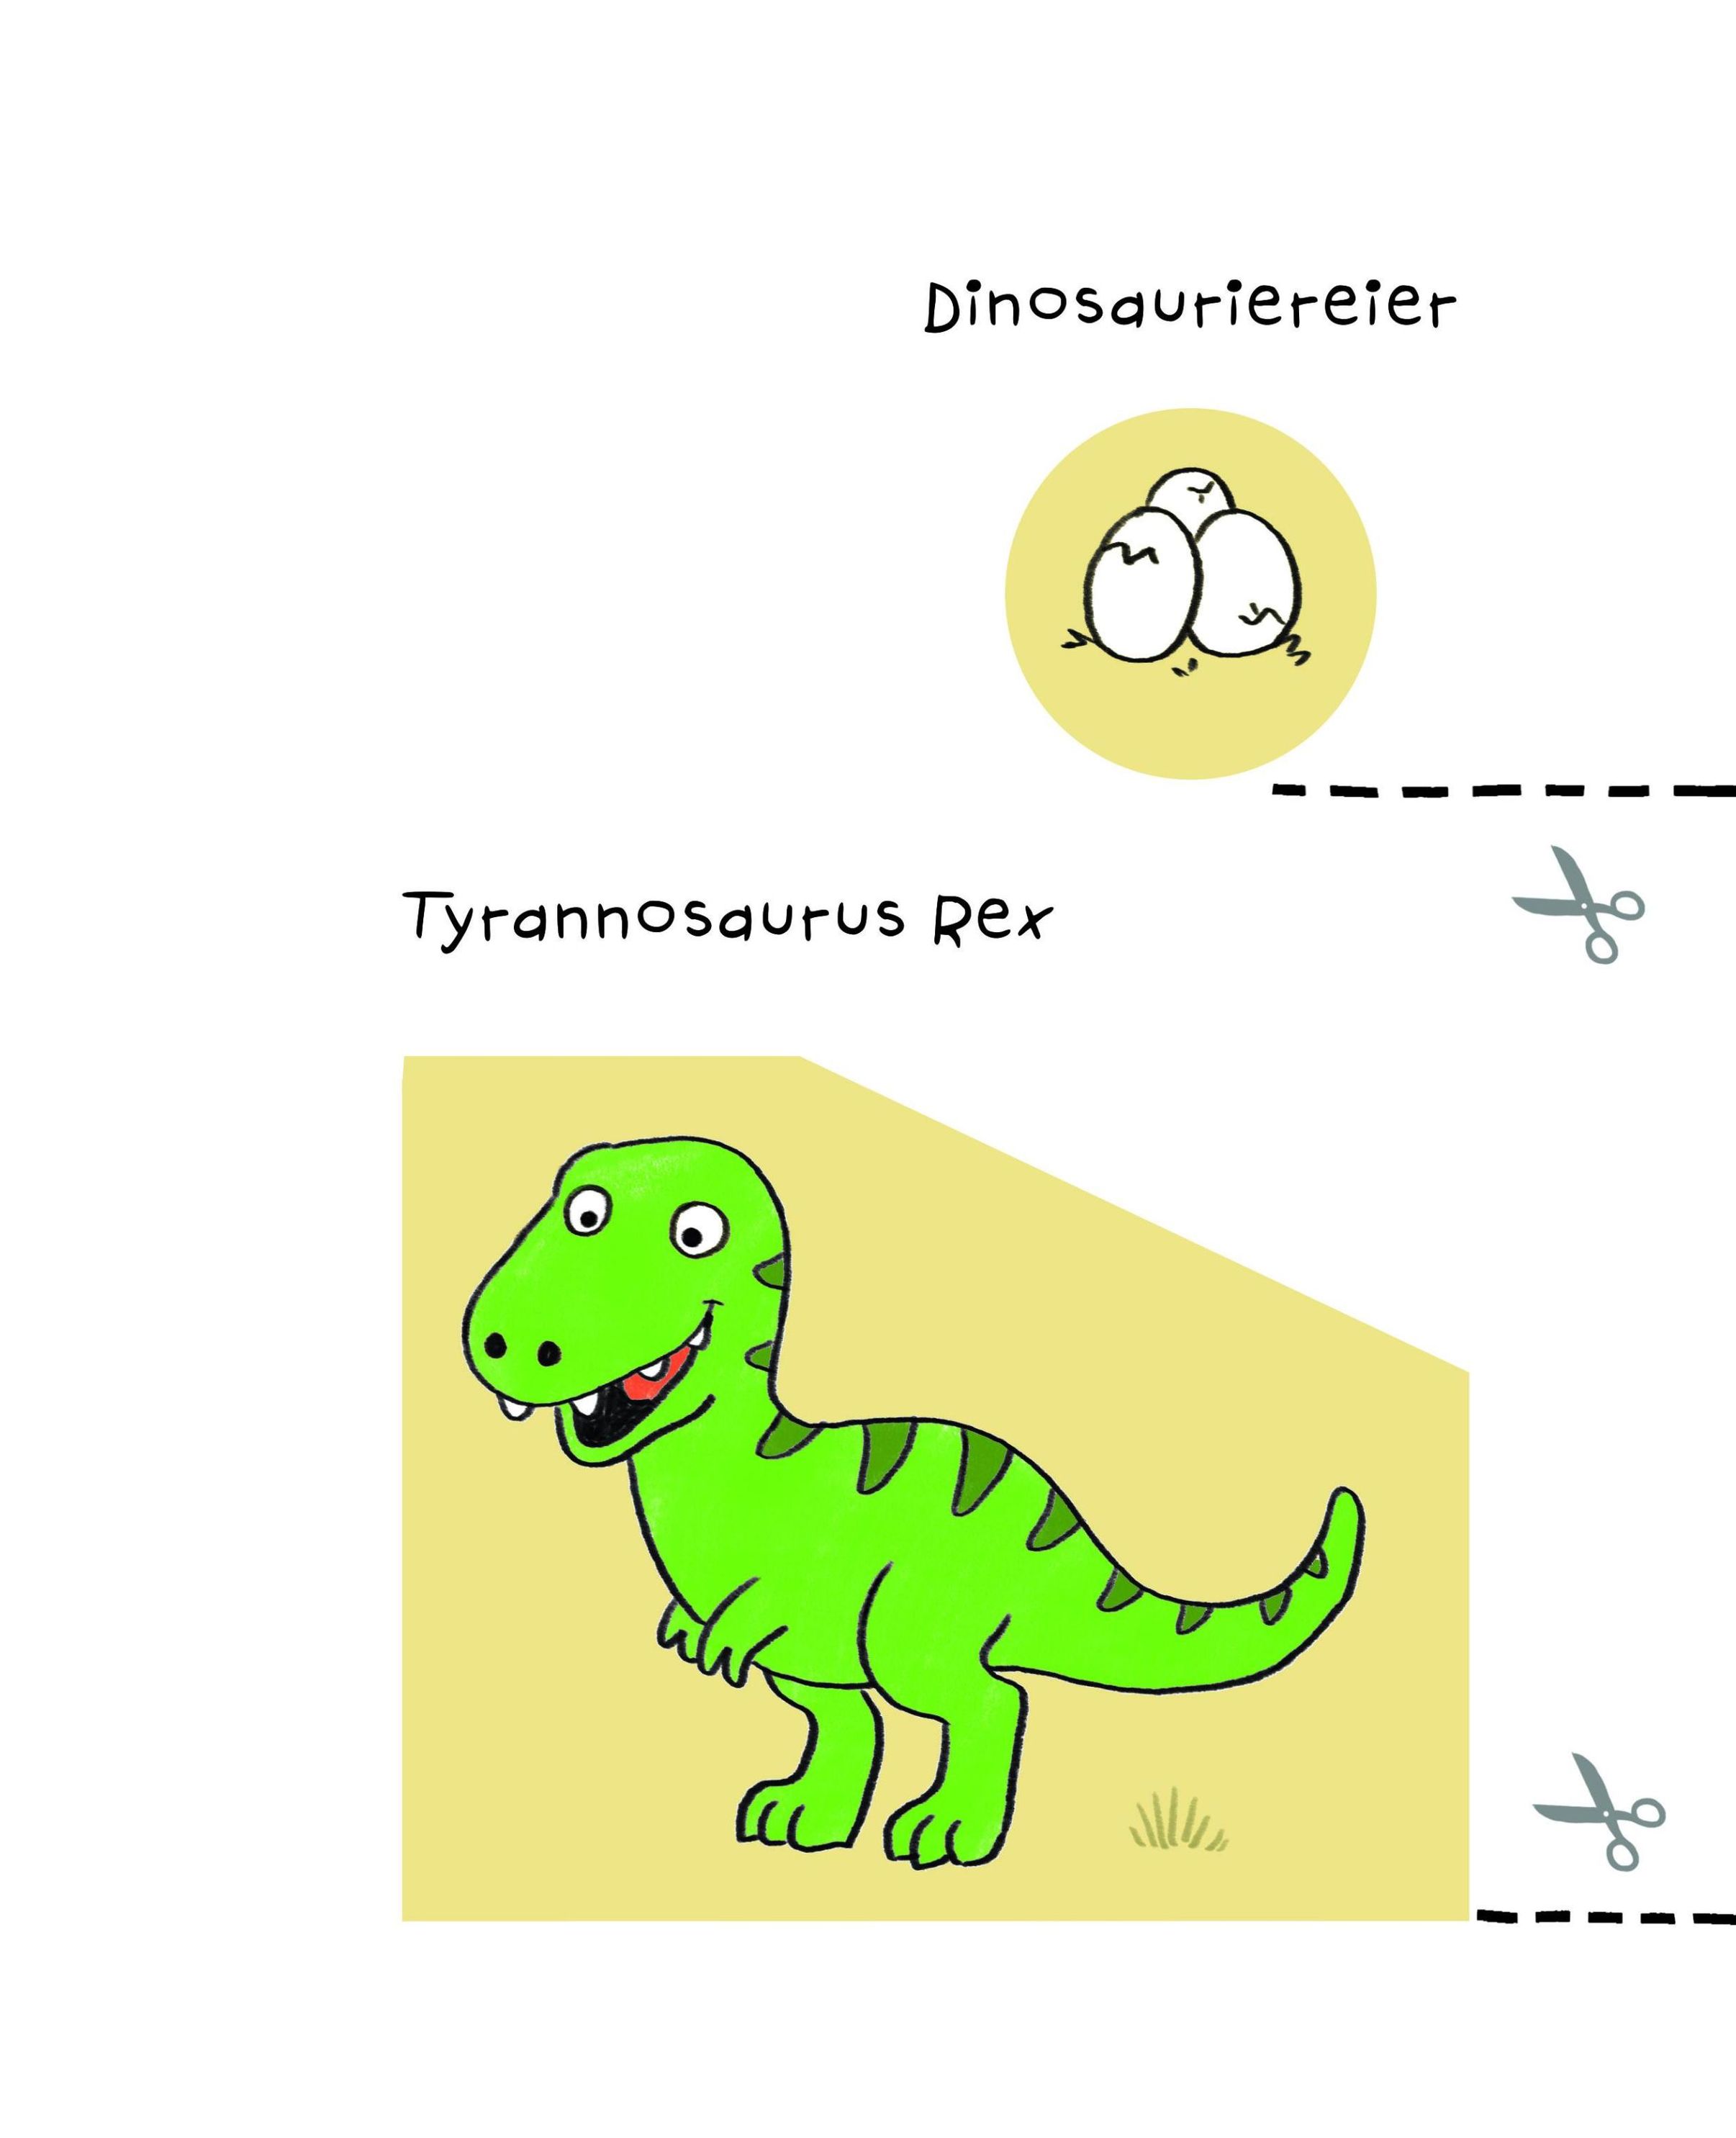 Mein kunterbuntes Ausschneidebuch - Dinosaurier. Schneiden, kleben, malen  für Kinder ab 3 Jahren. Mit Scherenführerschei | Weltbild.at